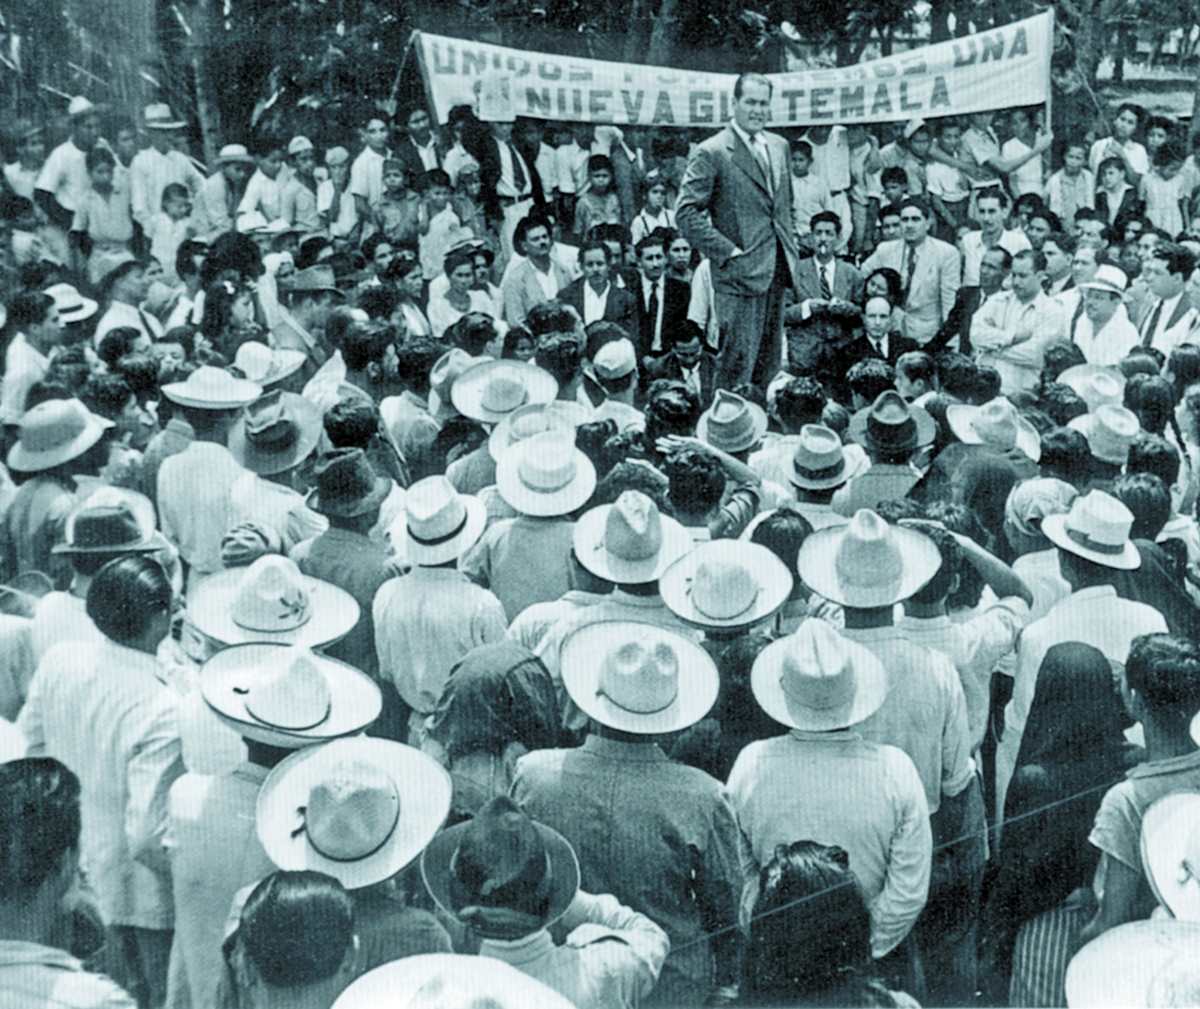 Historia de Guatemala: Arévalo asume la presidencia en 1945